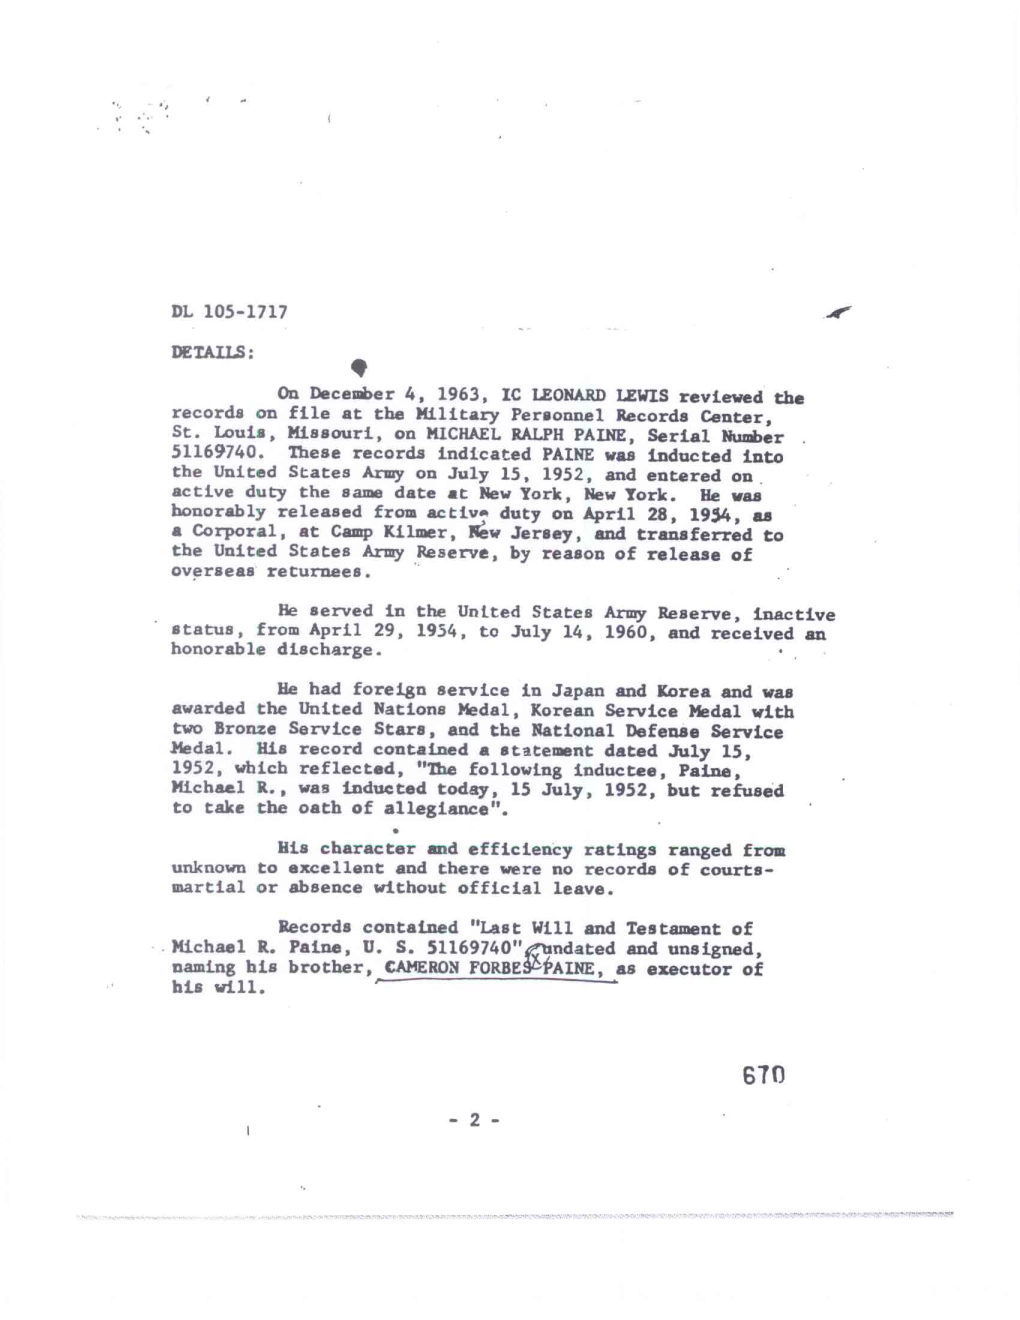 DL 105-1717 DETAILS: on December 4, 1963, IC LEONARD LEWIS